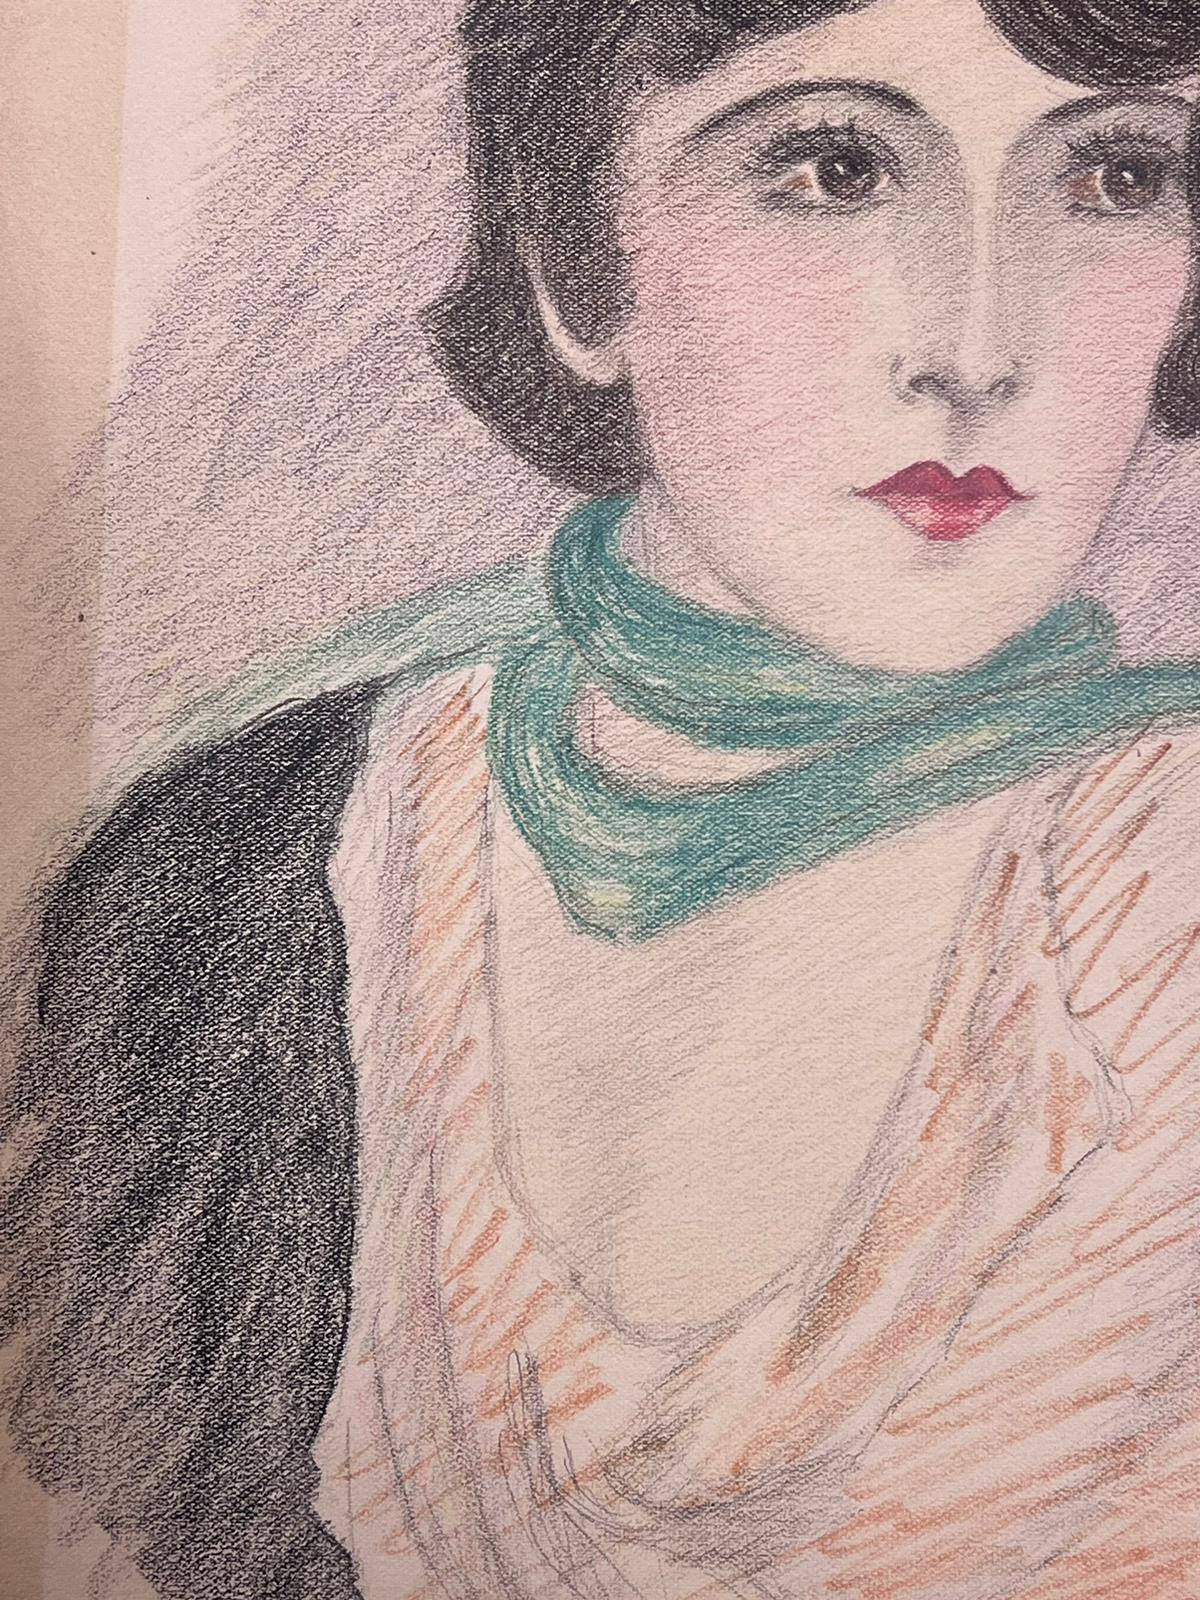 Porträt einer eleganten Dame
Original Bleistiftzeichnung auf Papier
von Marjorie Schiele (1913-2008) *siehe Anmerkungen unten
unterzeichnet
Ein Blatt Papier ist 12 x 9,5 Zoll groß.
In gutem Zustand, wenn auch mit kleinen alten Flecken, wie bei jedem